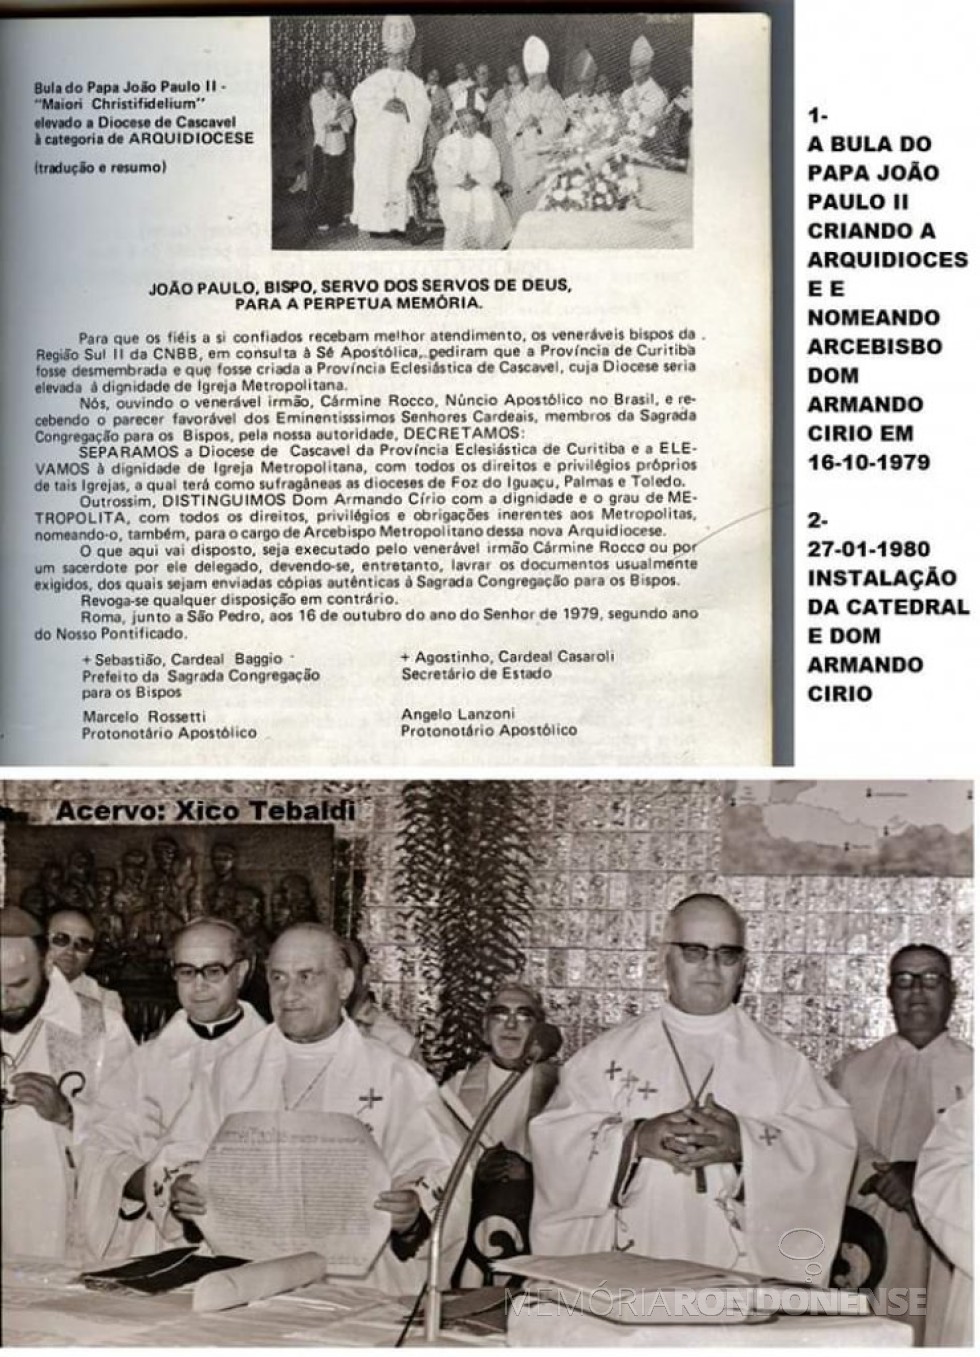 Detalhes da nomeação e posse de D. Armando Cirio como 1º arcebispo metropolitano de Cascavel. 
Imagem: Acervo Pietro ( Pietro (Xico )Tebaldi - FOTO 10 - 